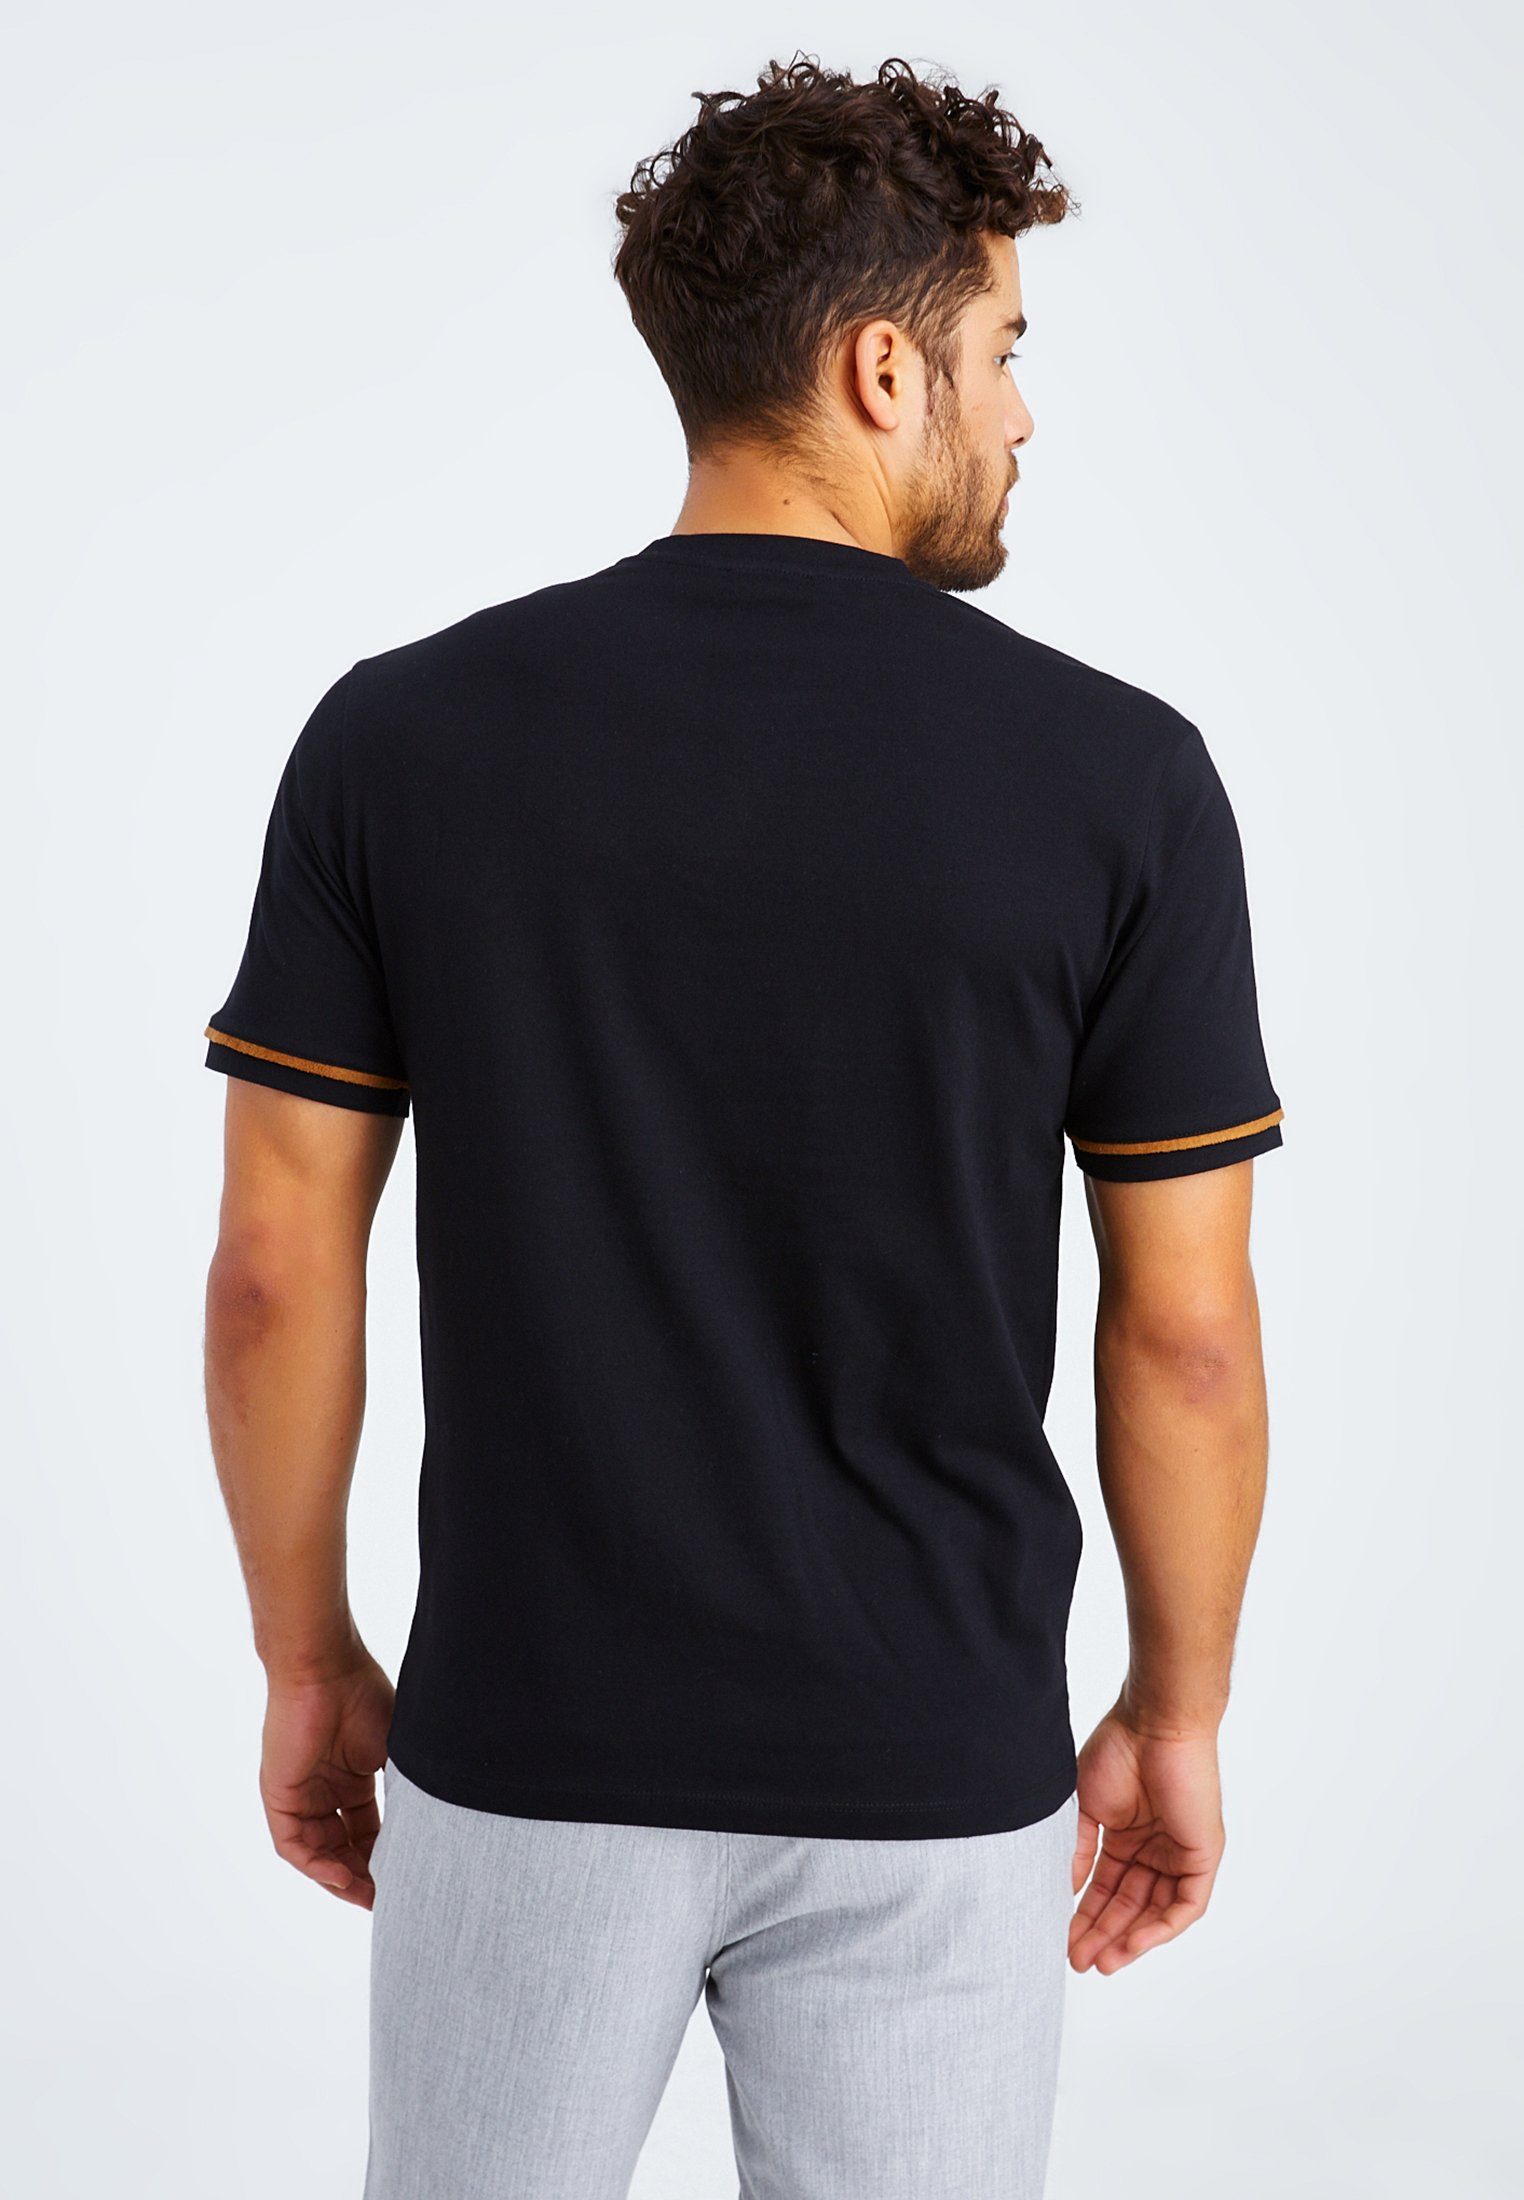 Leif Nelson T-Shirt normal T-Shirt schwarz LN-55740 Herren V-Ausschnitt